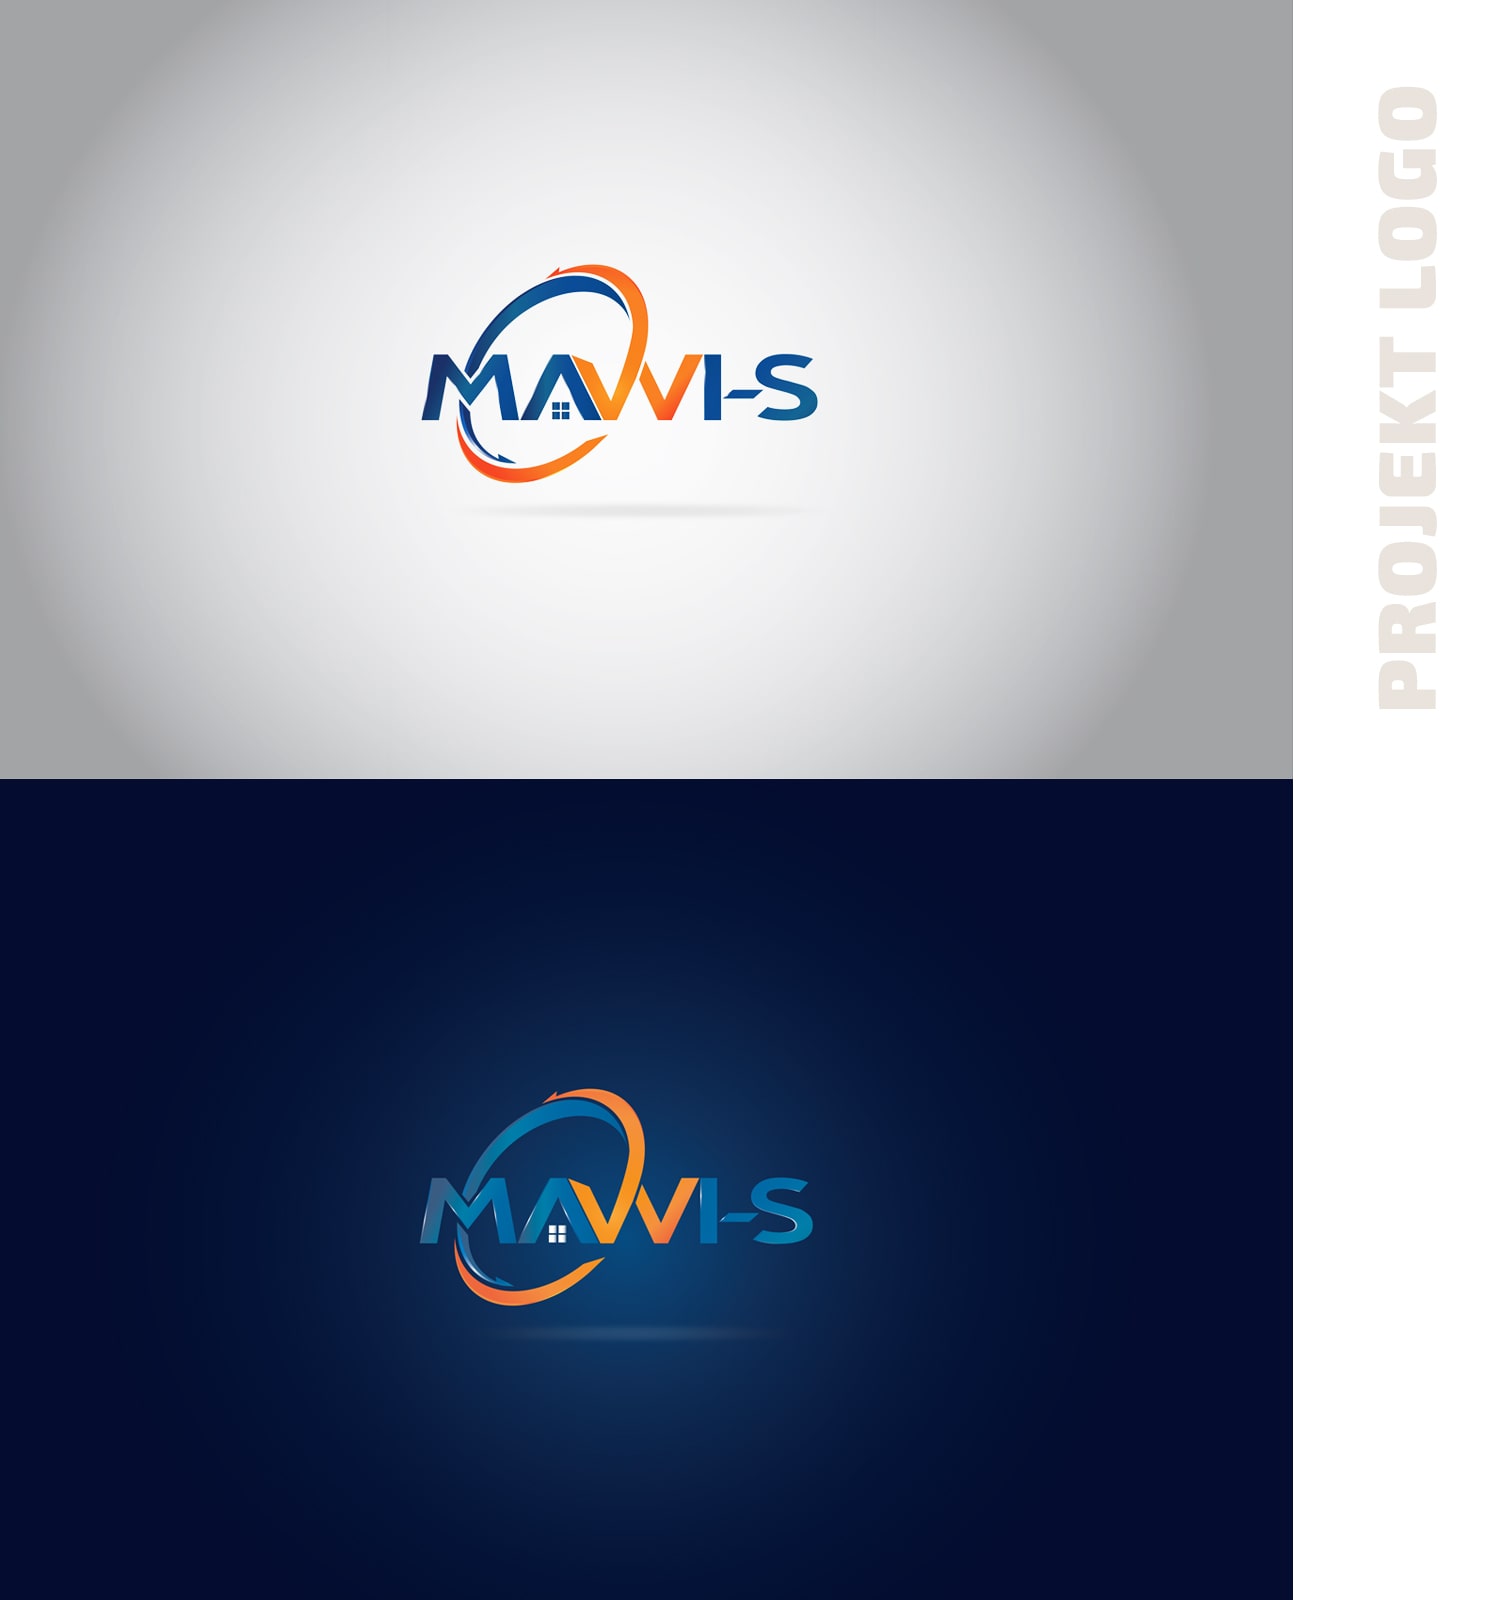 Projekt Logo MAWI-S